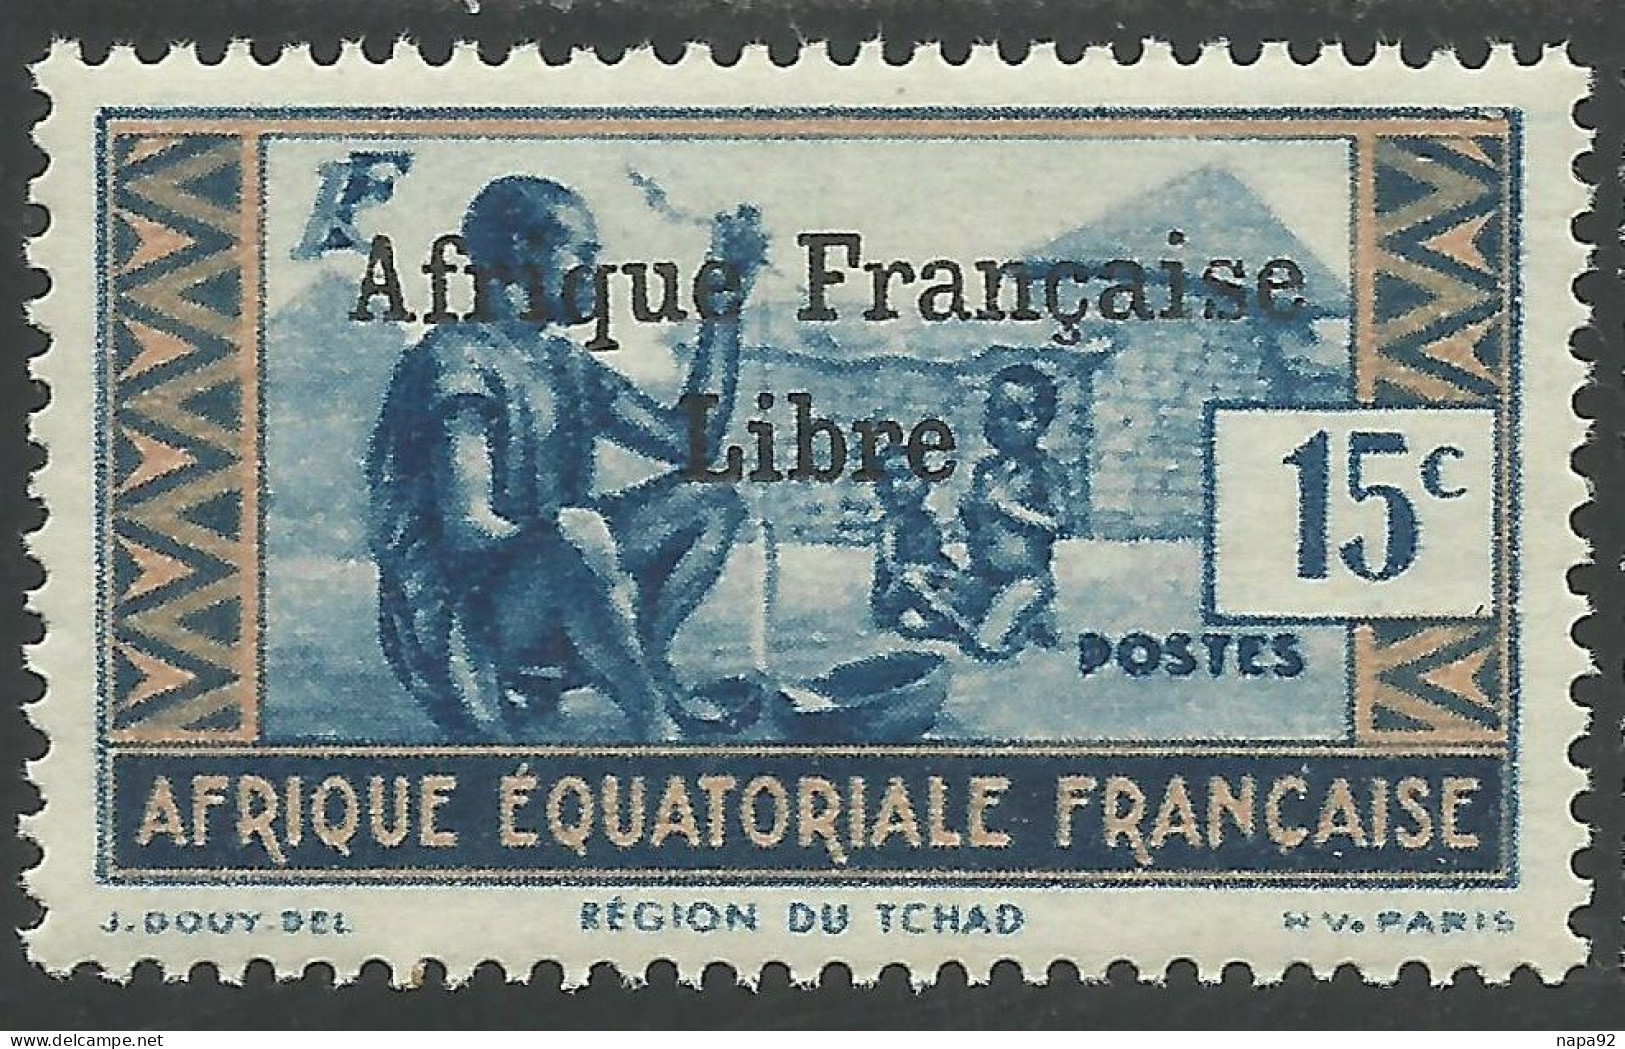 AFRIQUE EQUATORIALE FRANCAISE - AEF - A.E.F. - 1941 - YT 161** - 2ème TIRAGE - Ongebruikt